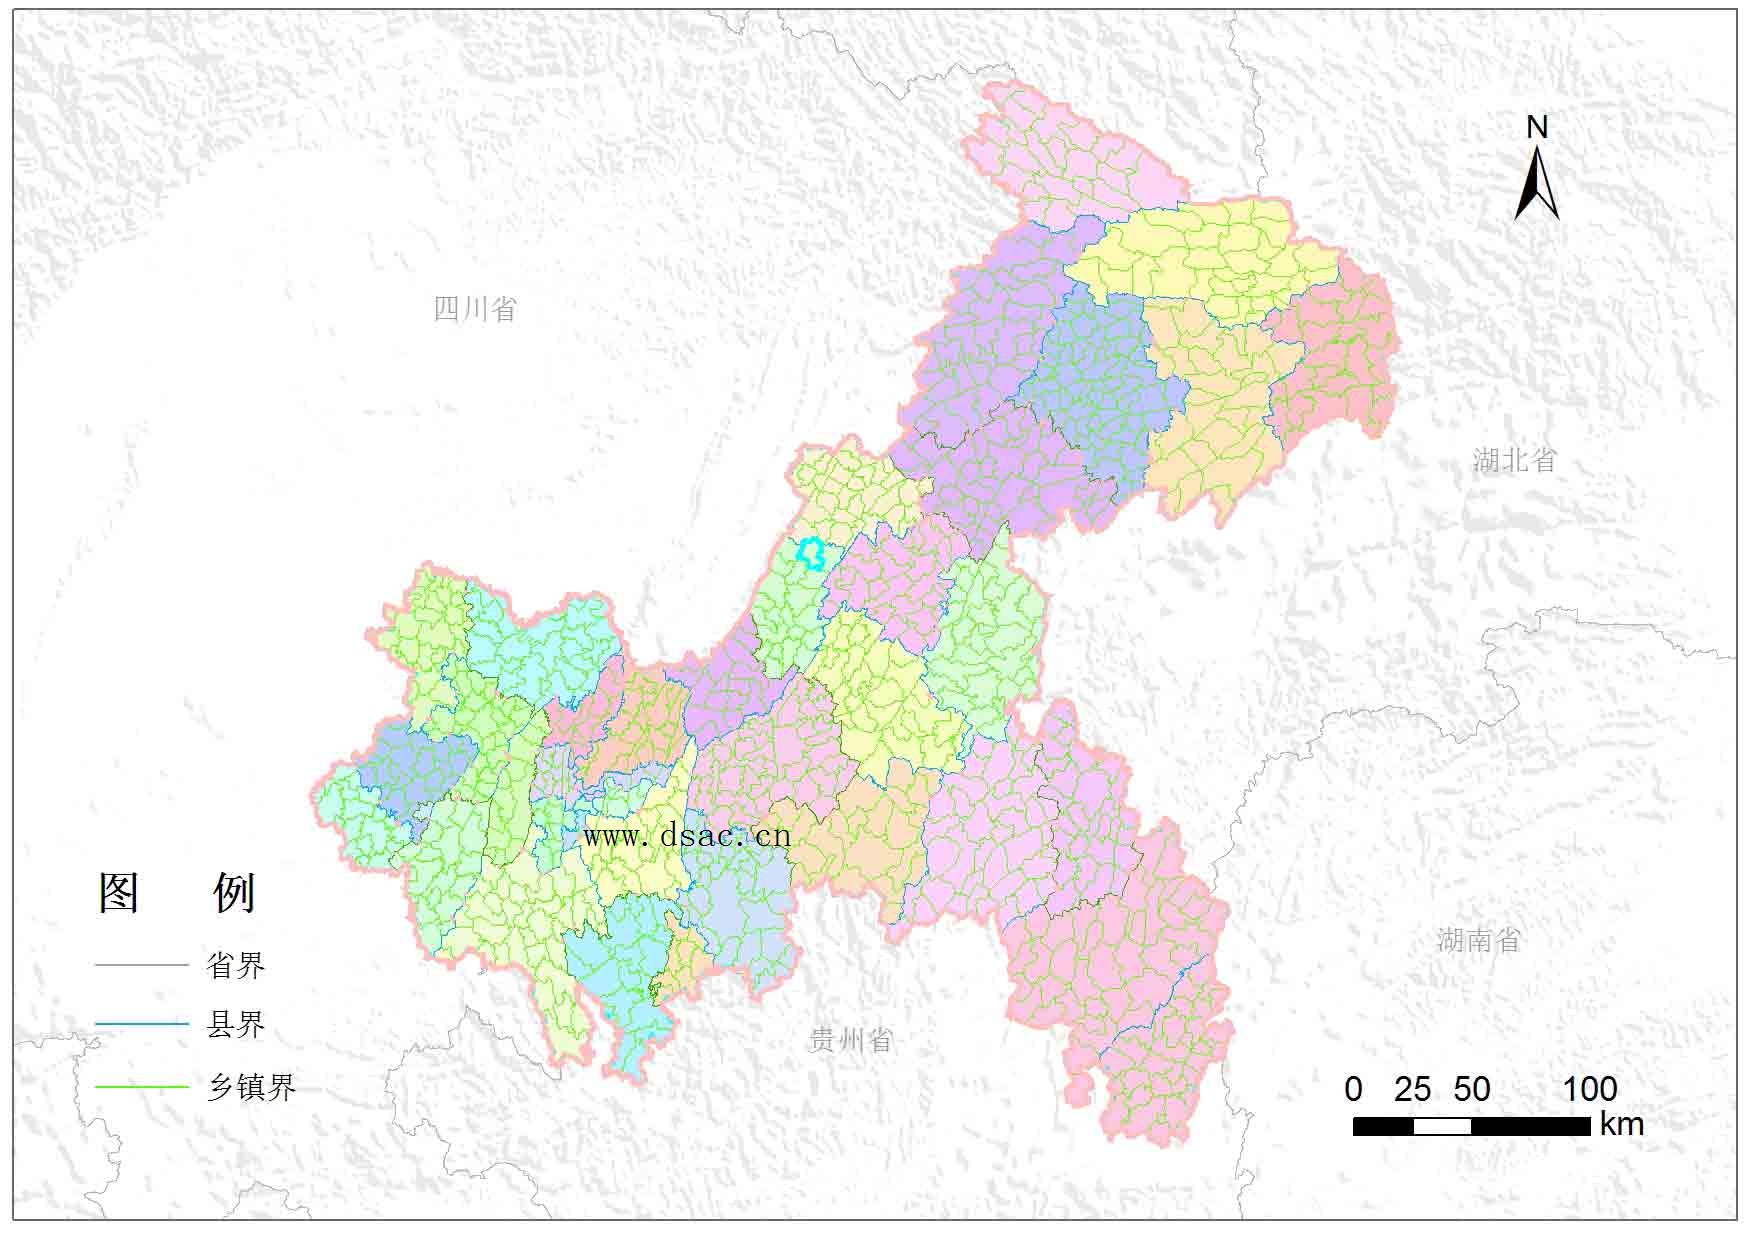 采用人机交互的方式开展行政区划地图矢量化工作,最终获取重庆市乡镇图片